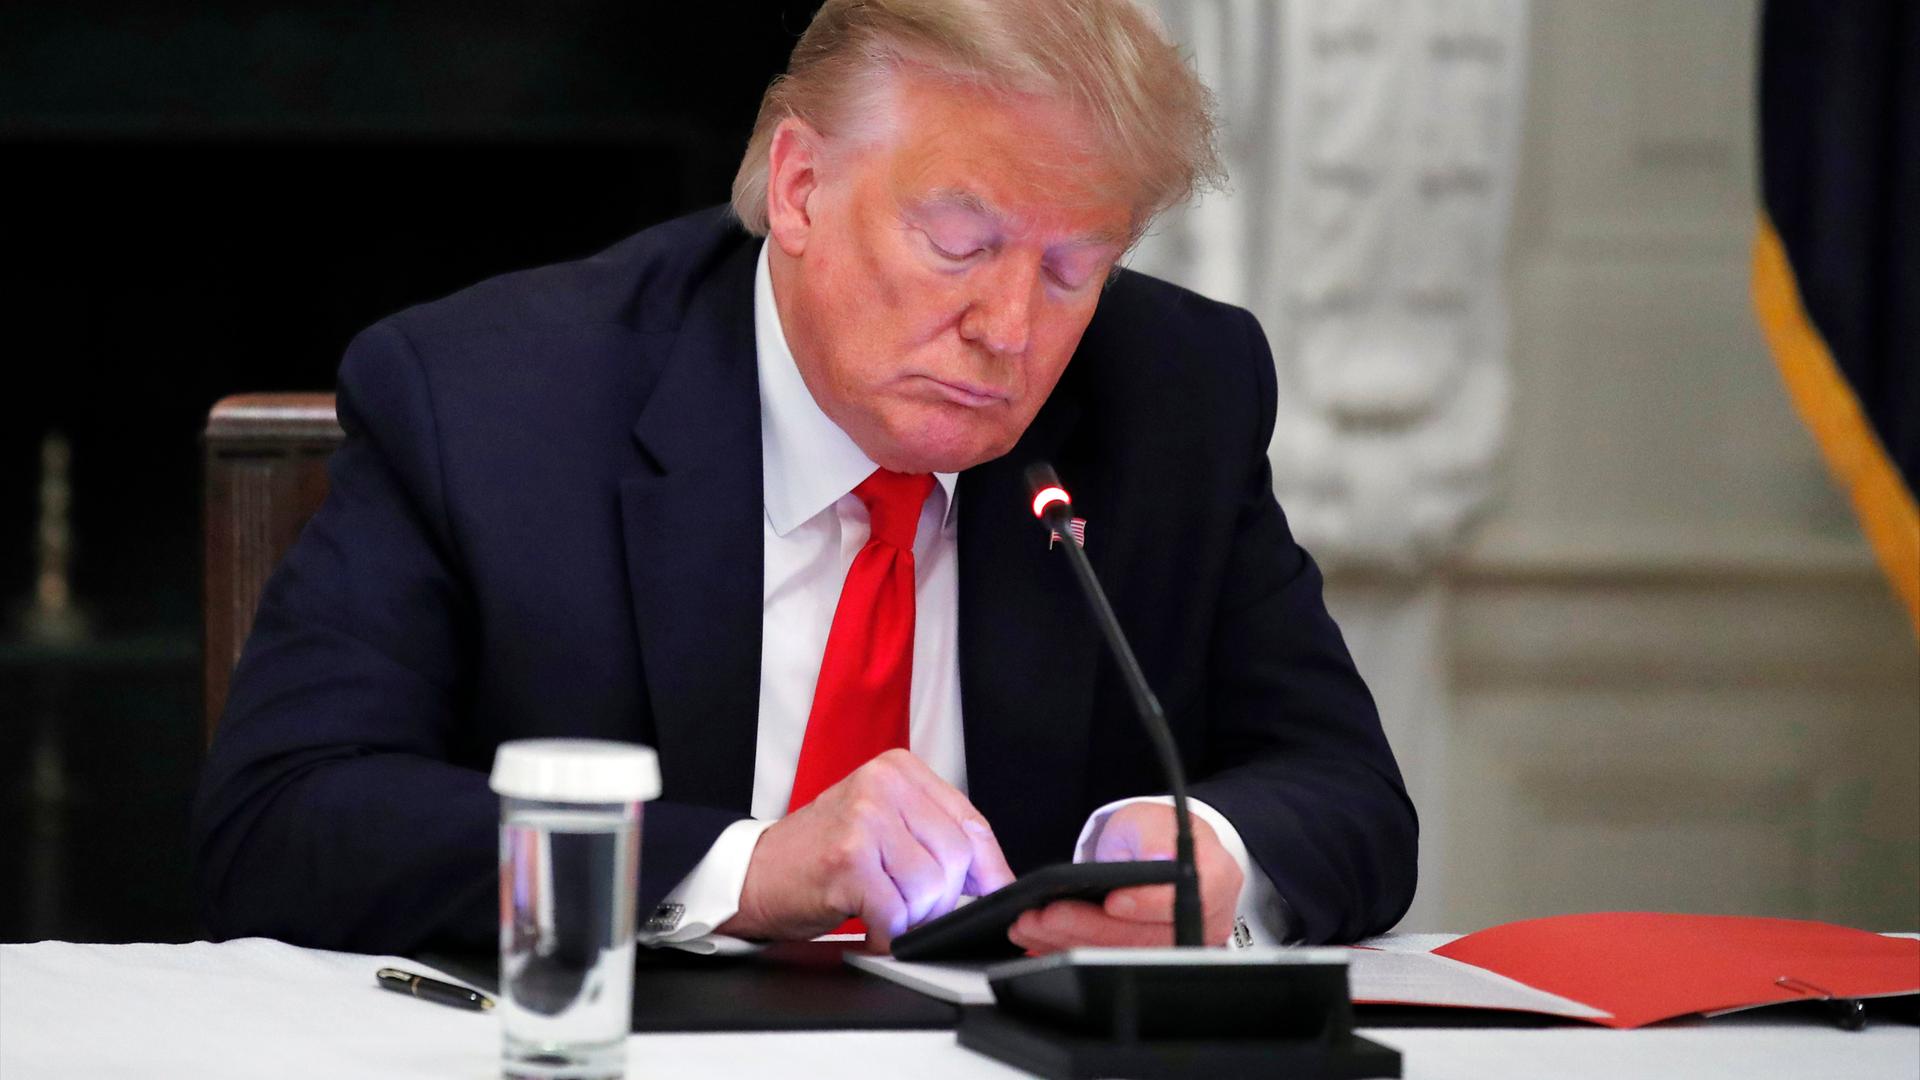 Donald Trump sitz mit gesenktem Blick an einem Konferenztisch und schaut auf das erleuchtete Display seines Smartphones.